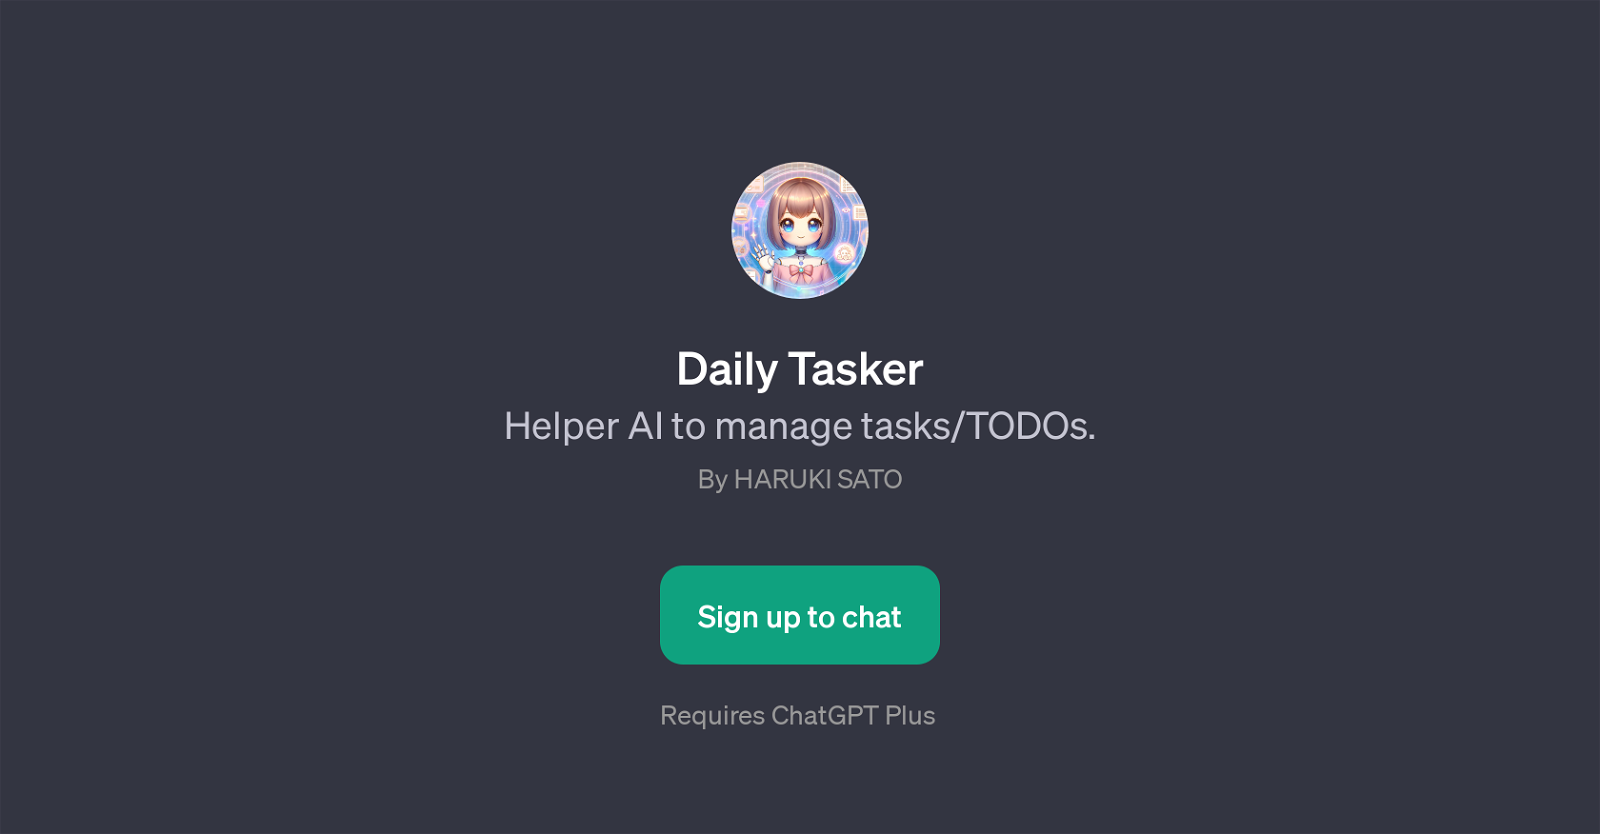 Daily Tasker website